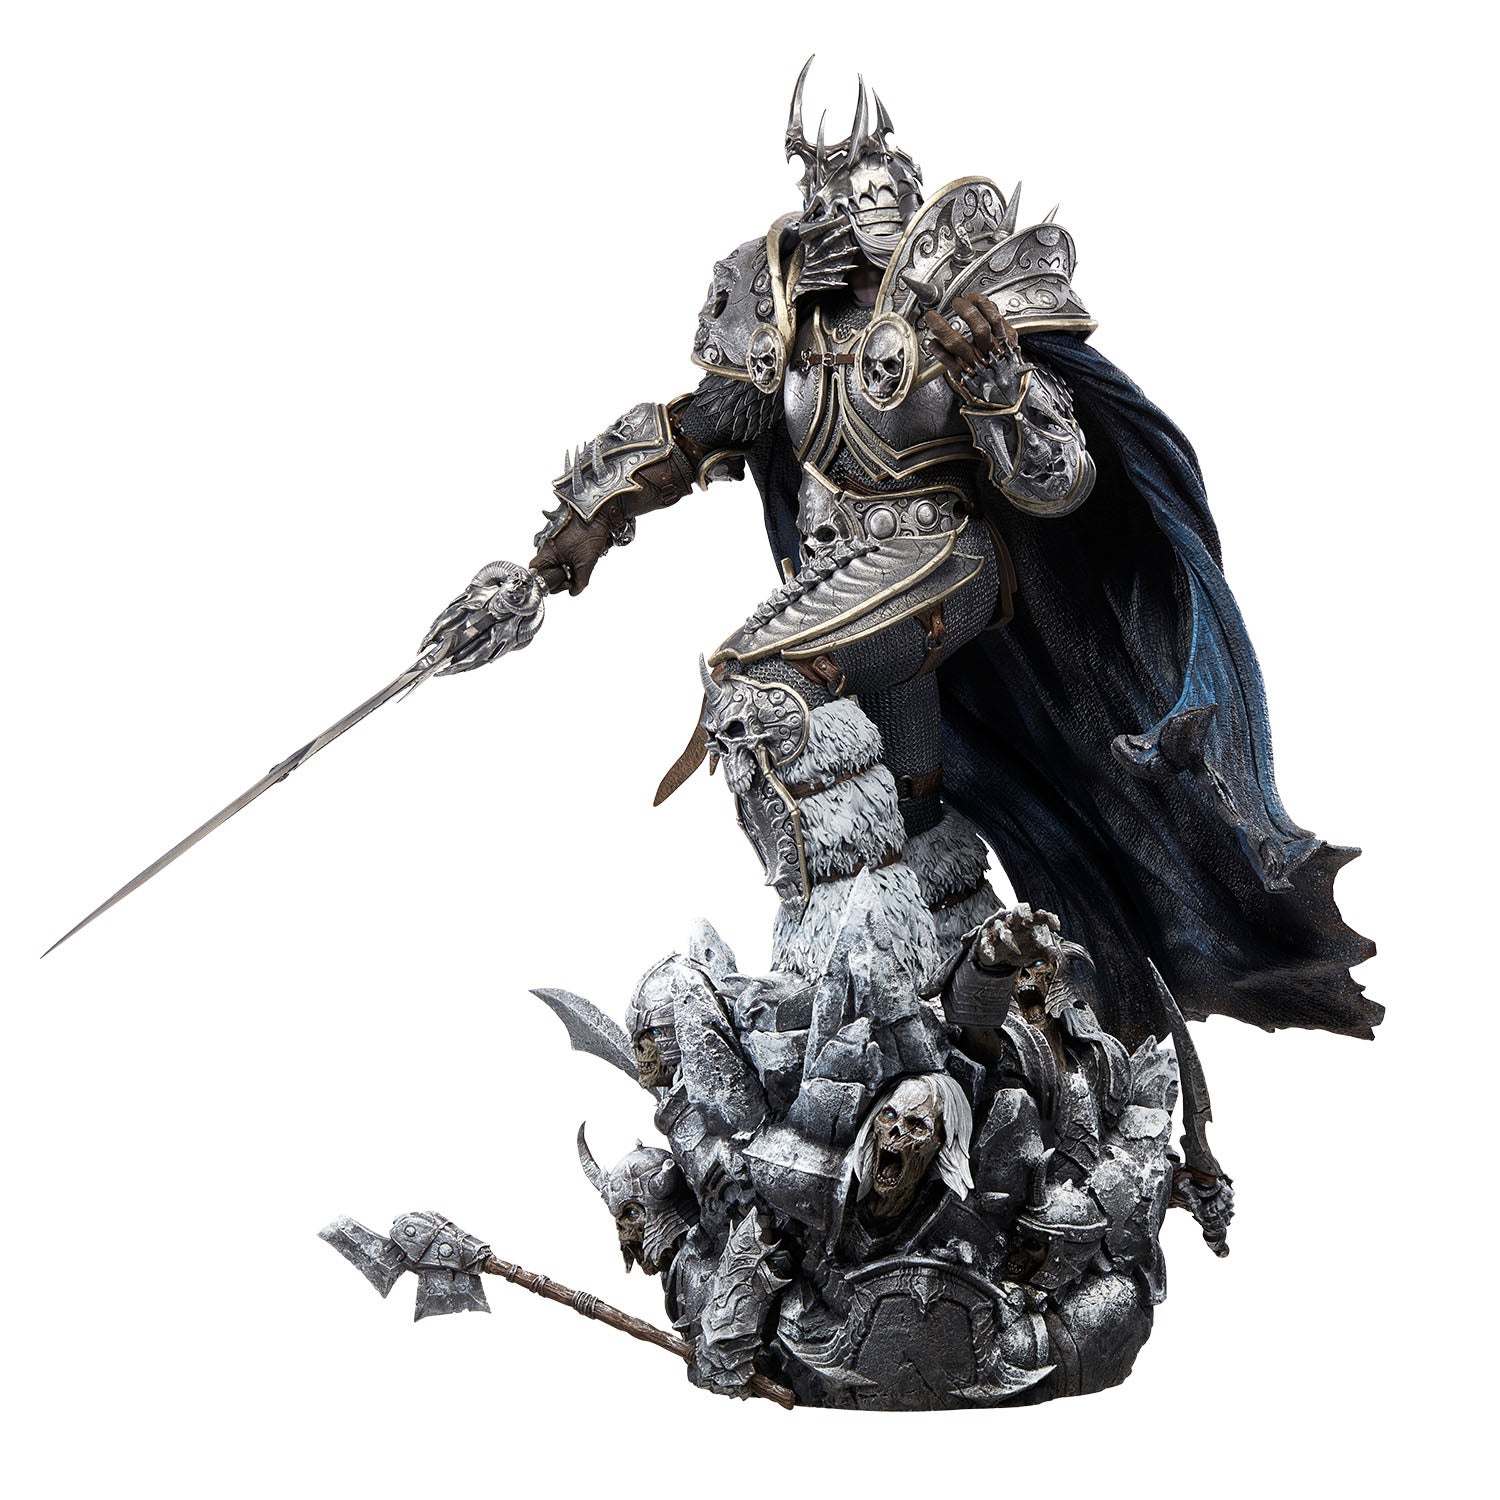 World of Warcraft Lich King Arthas 66cm Premium Statue - Left View